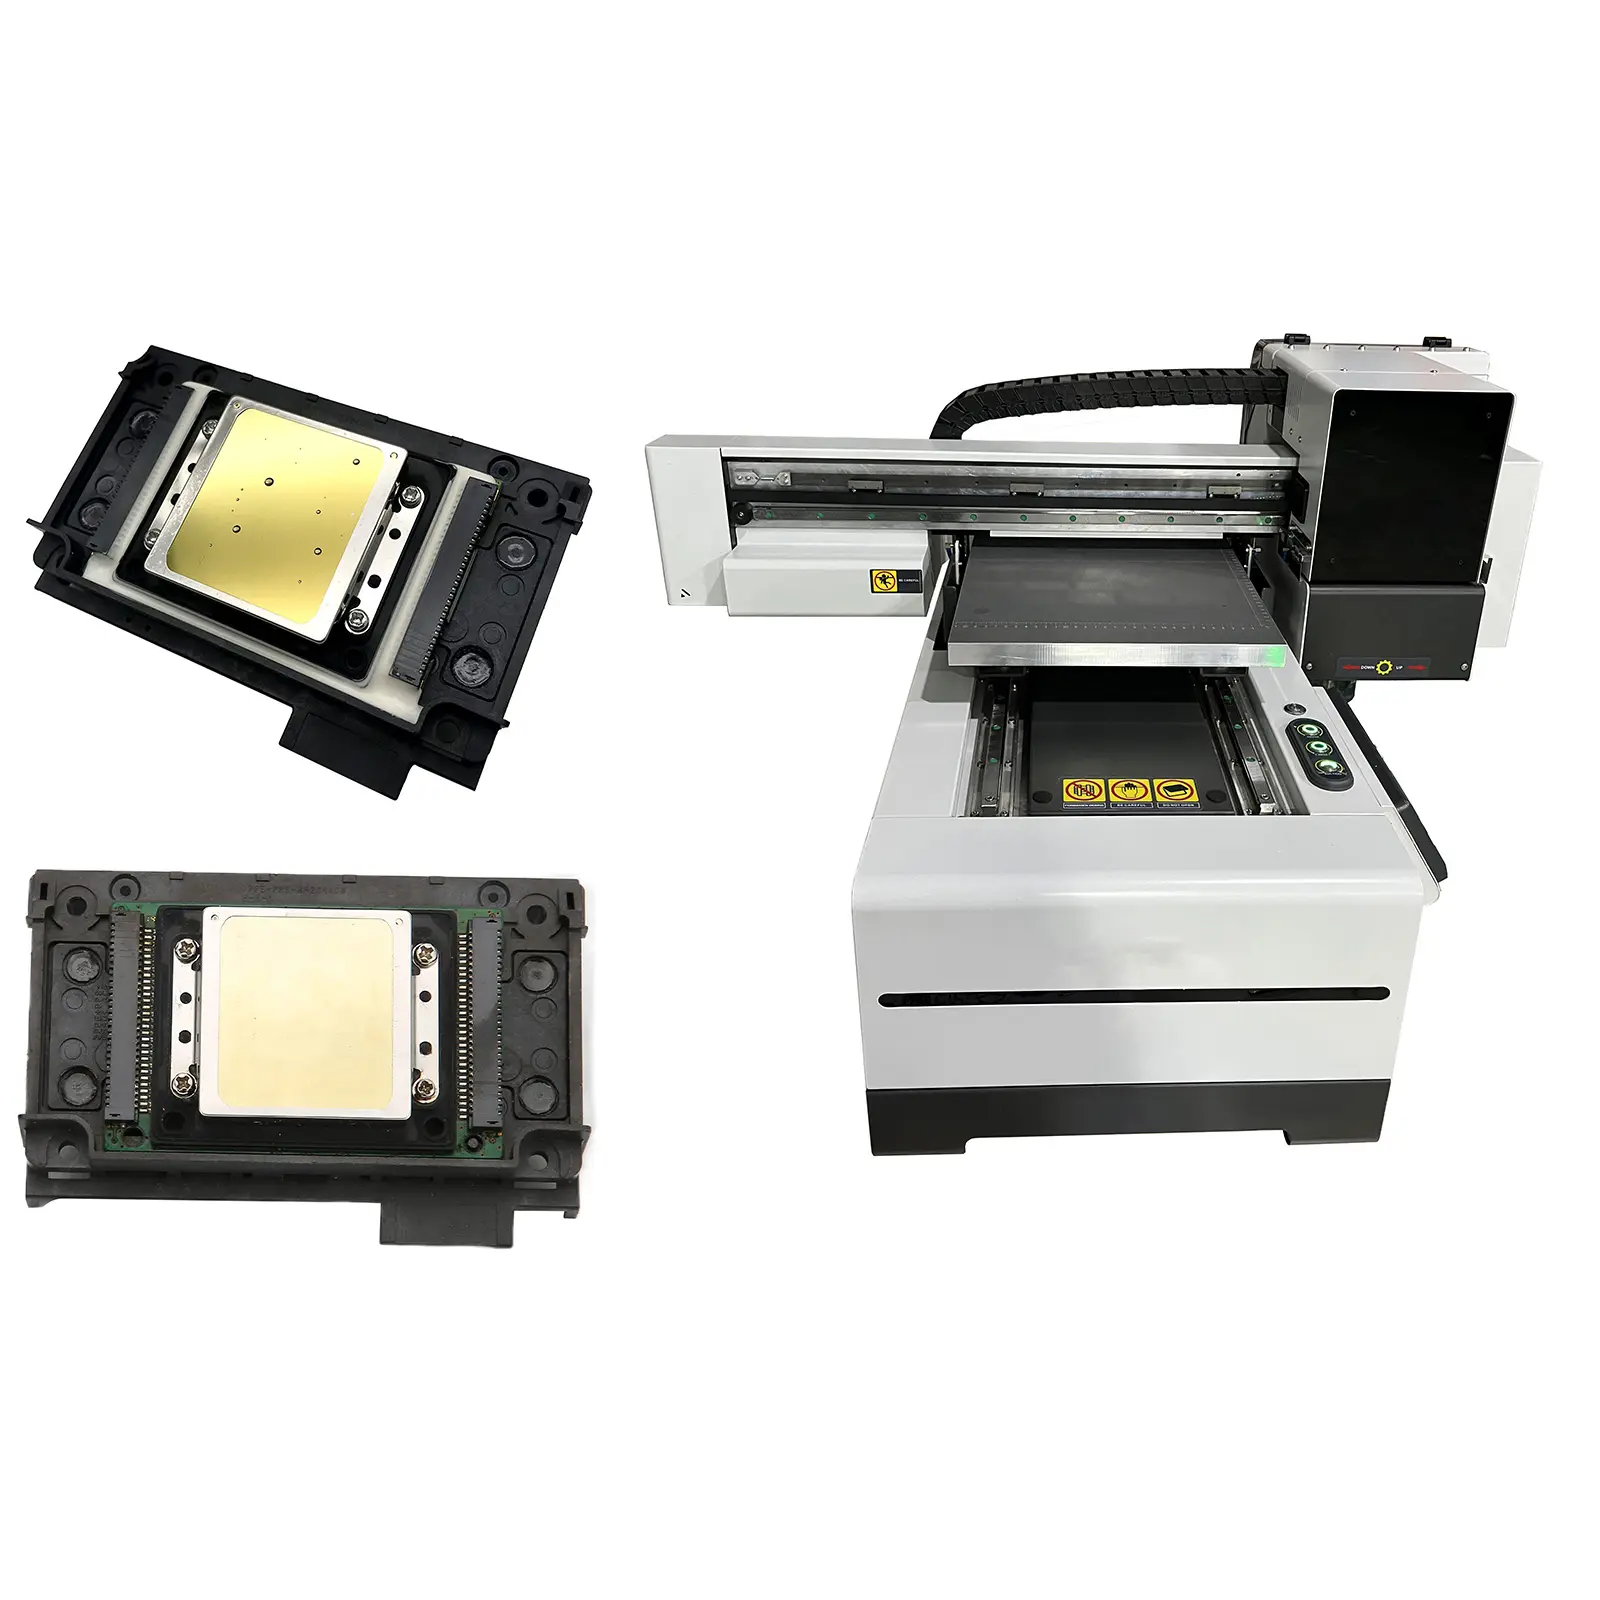 เครื่องพิมพ์ทรงกระบอกสำหรับเตียงแบนอเนกประสงค์ UV ตั้งโต๊ะ A3 2023เคสโทรศัพท์ที่ดีที่สุดกระเป๋าเบากอล์ฟยูเอสบีซีดีเครื่องพิมพ์3D ยูนิต UV